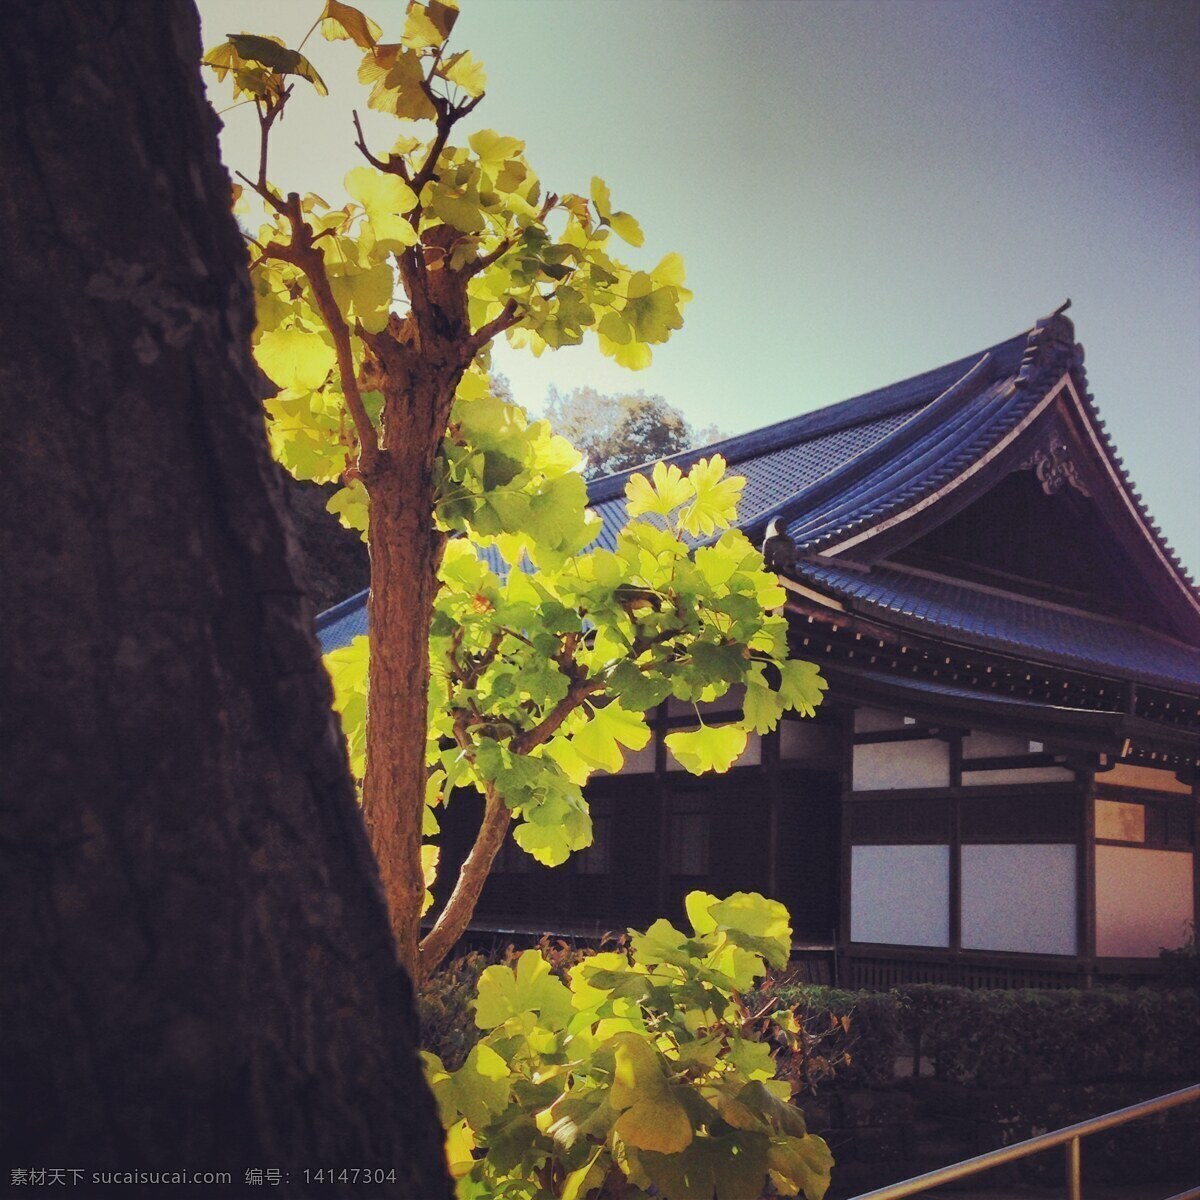 日本建筑 日本 建筑 住宅 树 房屋 清新 建筑摄影 国外 旅游 国外旅游 旅游摄影